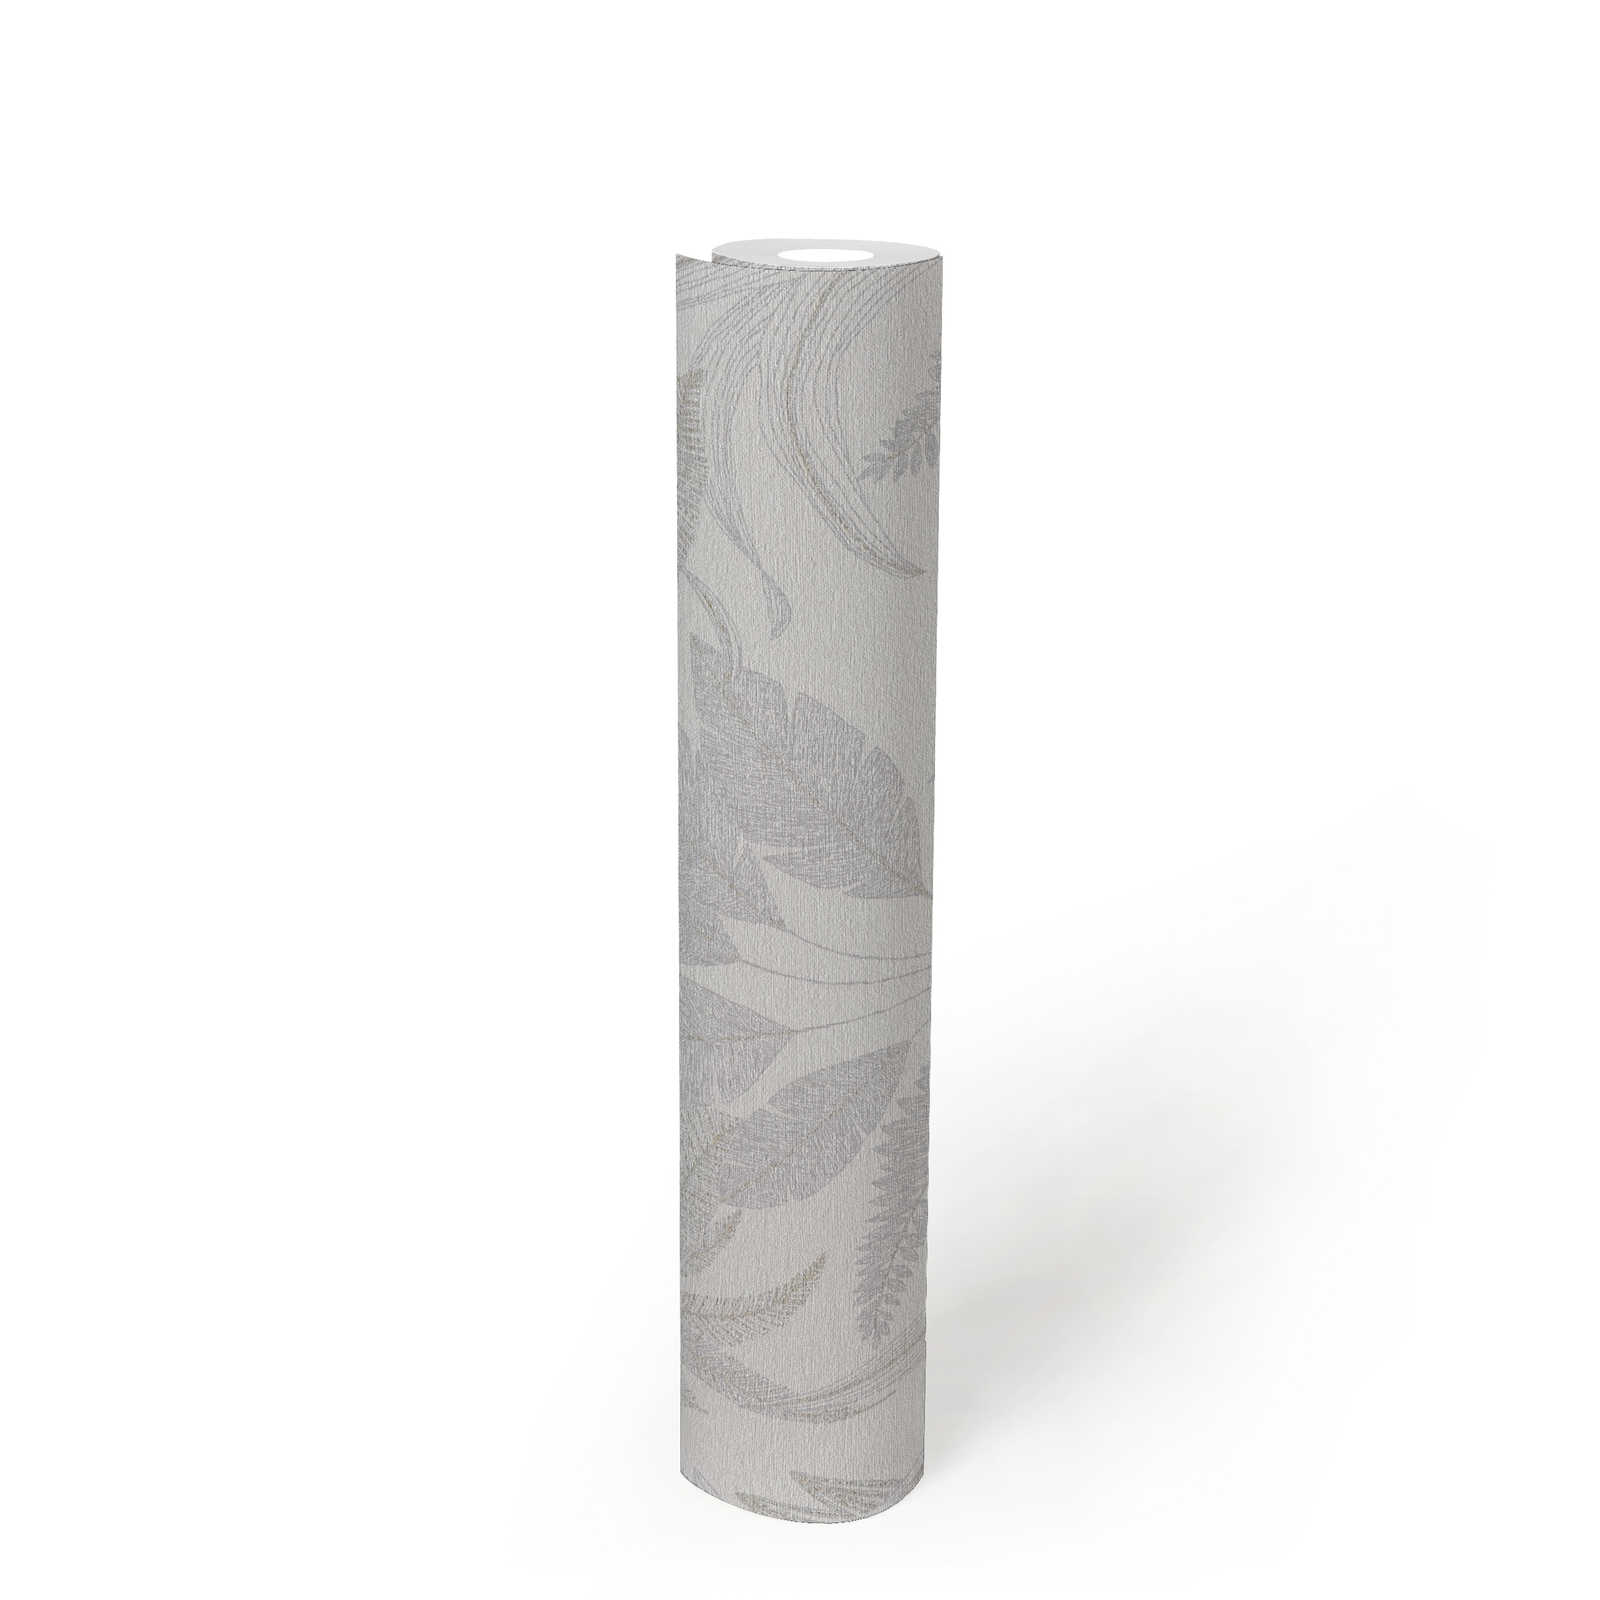             papier peint en papier intissé avec feuilles de jungle - motif légèrement structuré - gris, crème, or
        